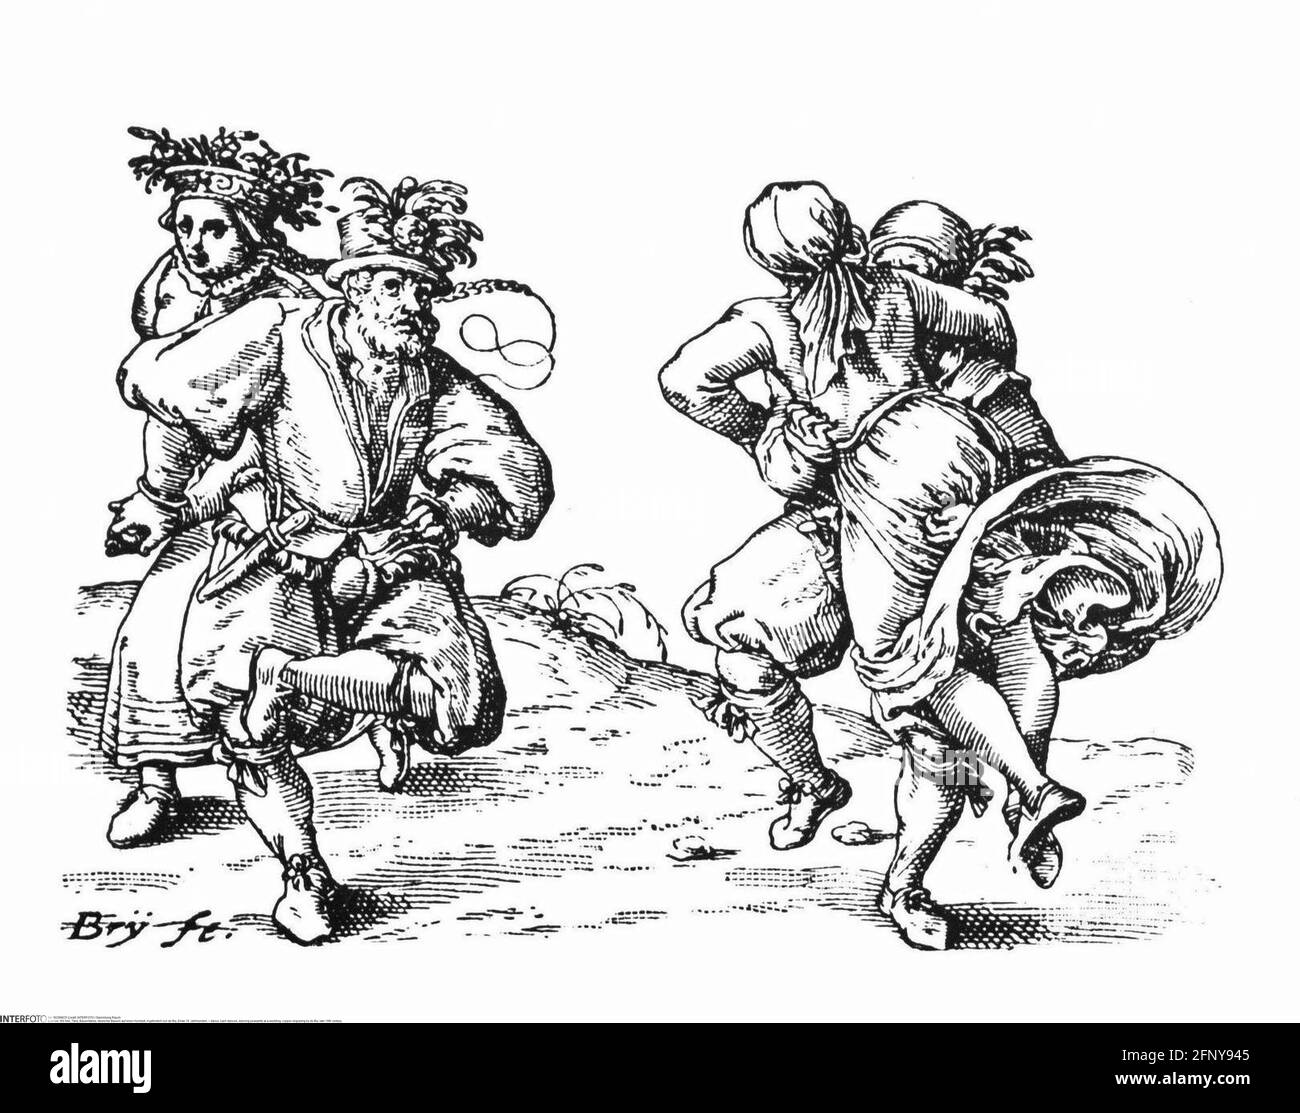 Tanz, Stalltänze, tanzende Bauern bei einer Hochzeit, Kupferstich von de Bry, Ende des 16. Jahrhunderts, ZUSÄTZLICHE RECHTE-FREIGABE-INFO-NICHT-VERFÜGBAR Stockfoto